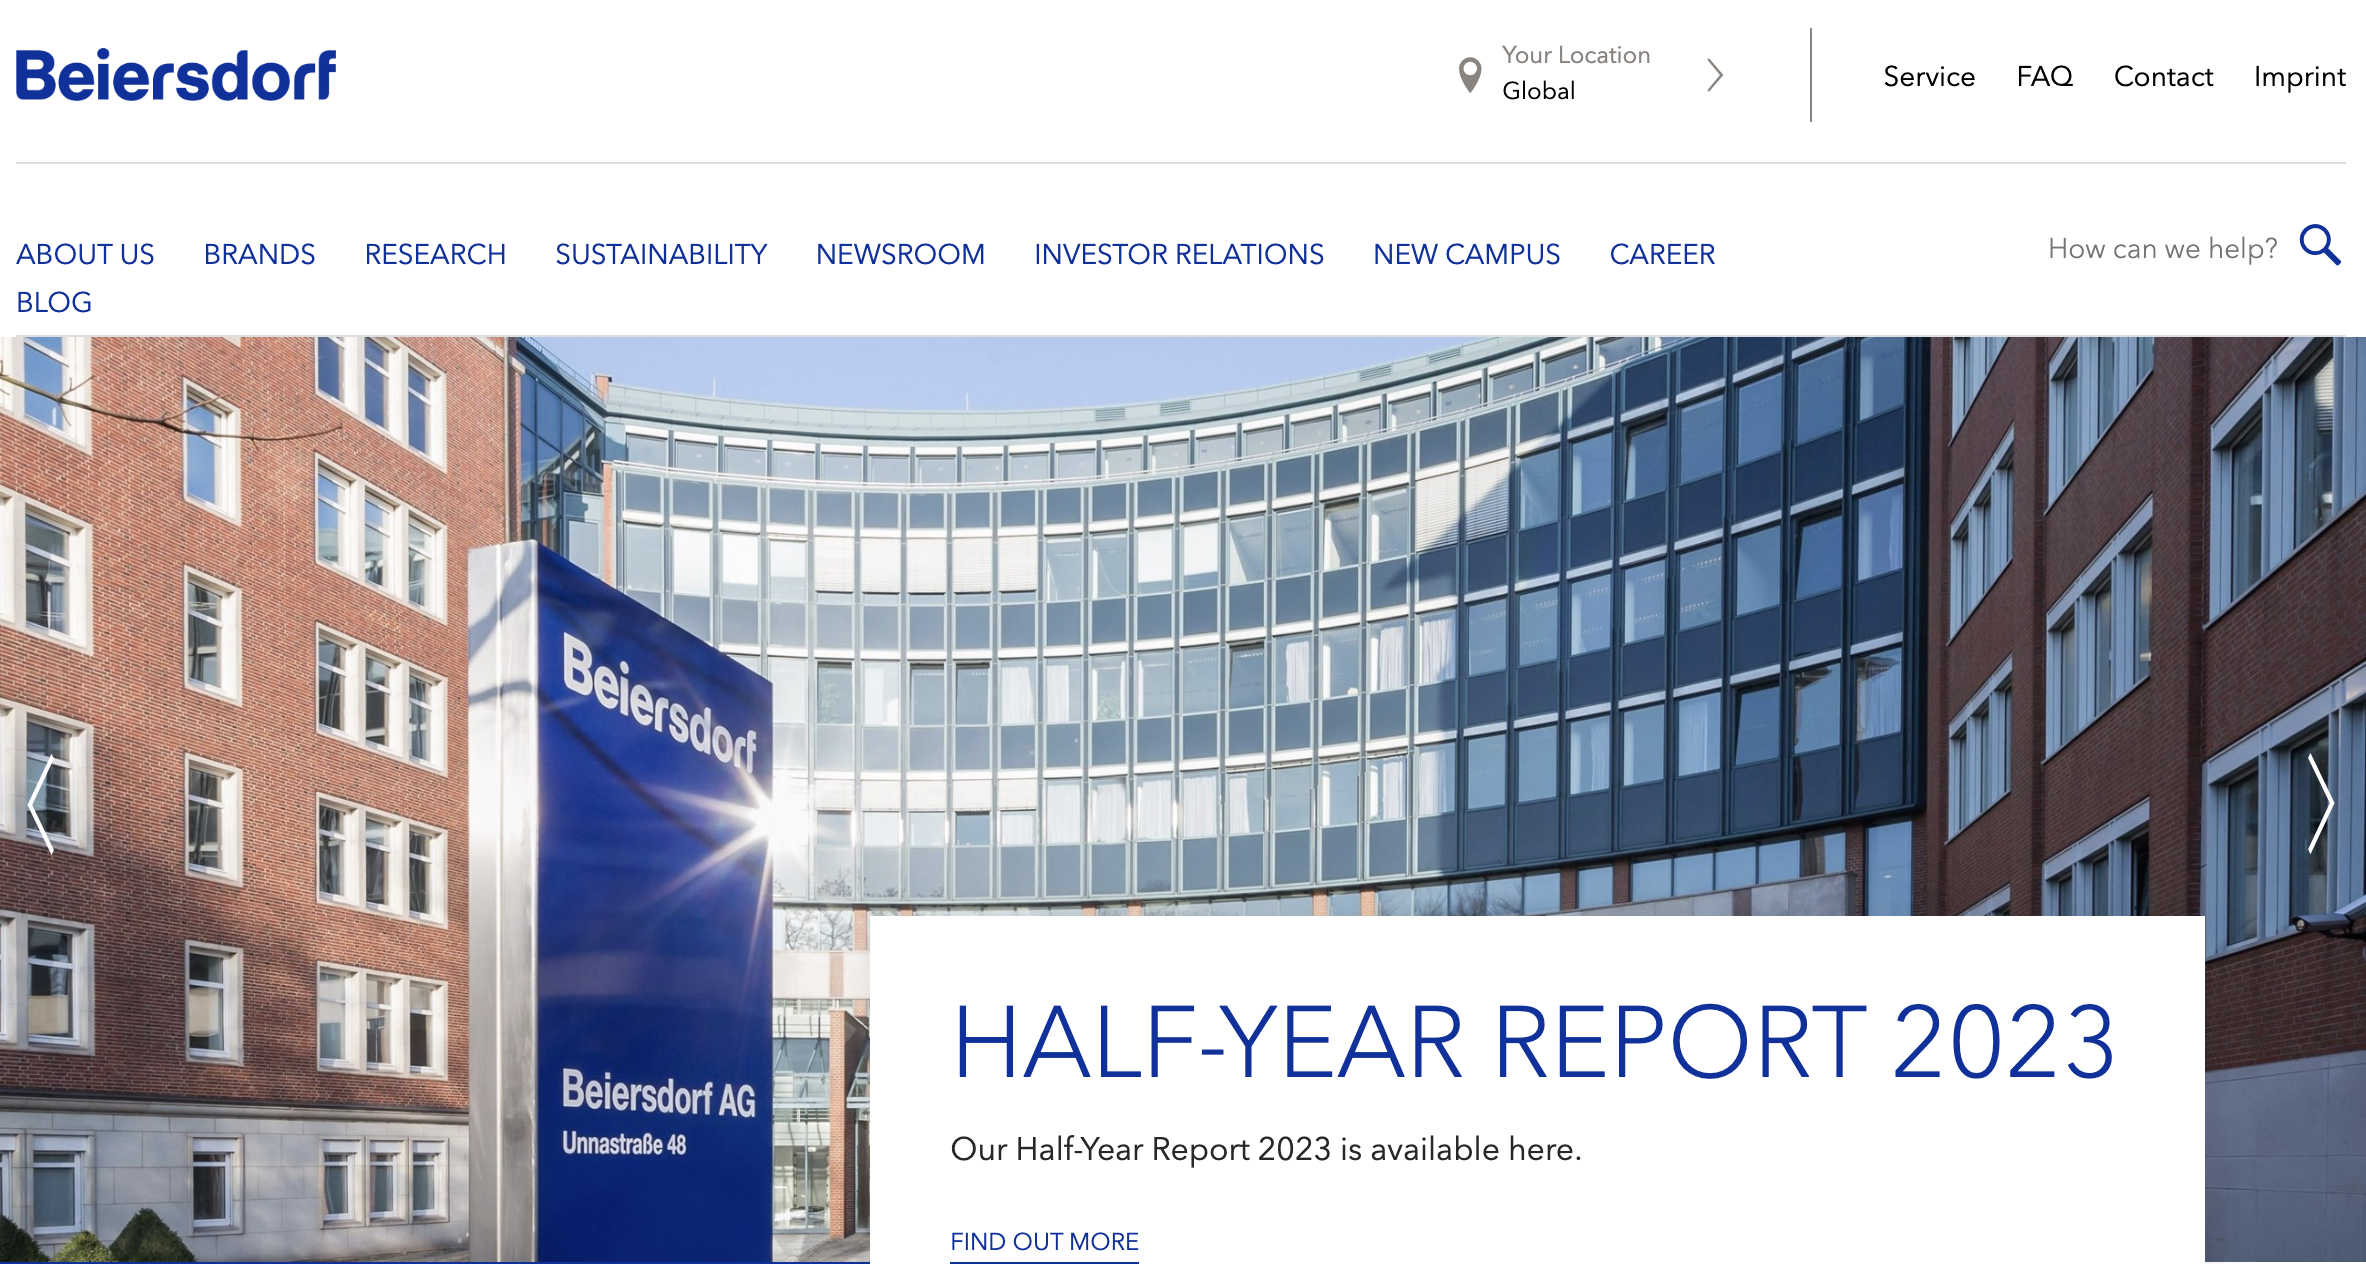 妮维雅的母公司 Beiersdorf 上半年销售增长12.3%， La Prairie 业绩受亚洲代购干扰下滑